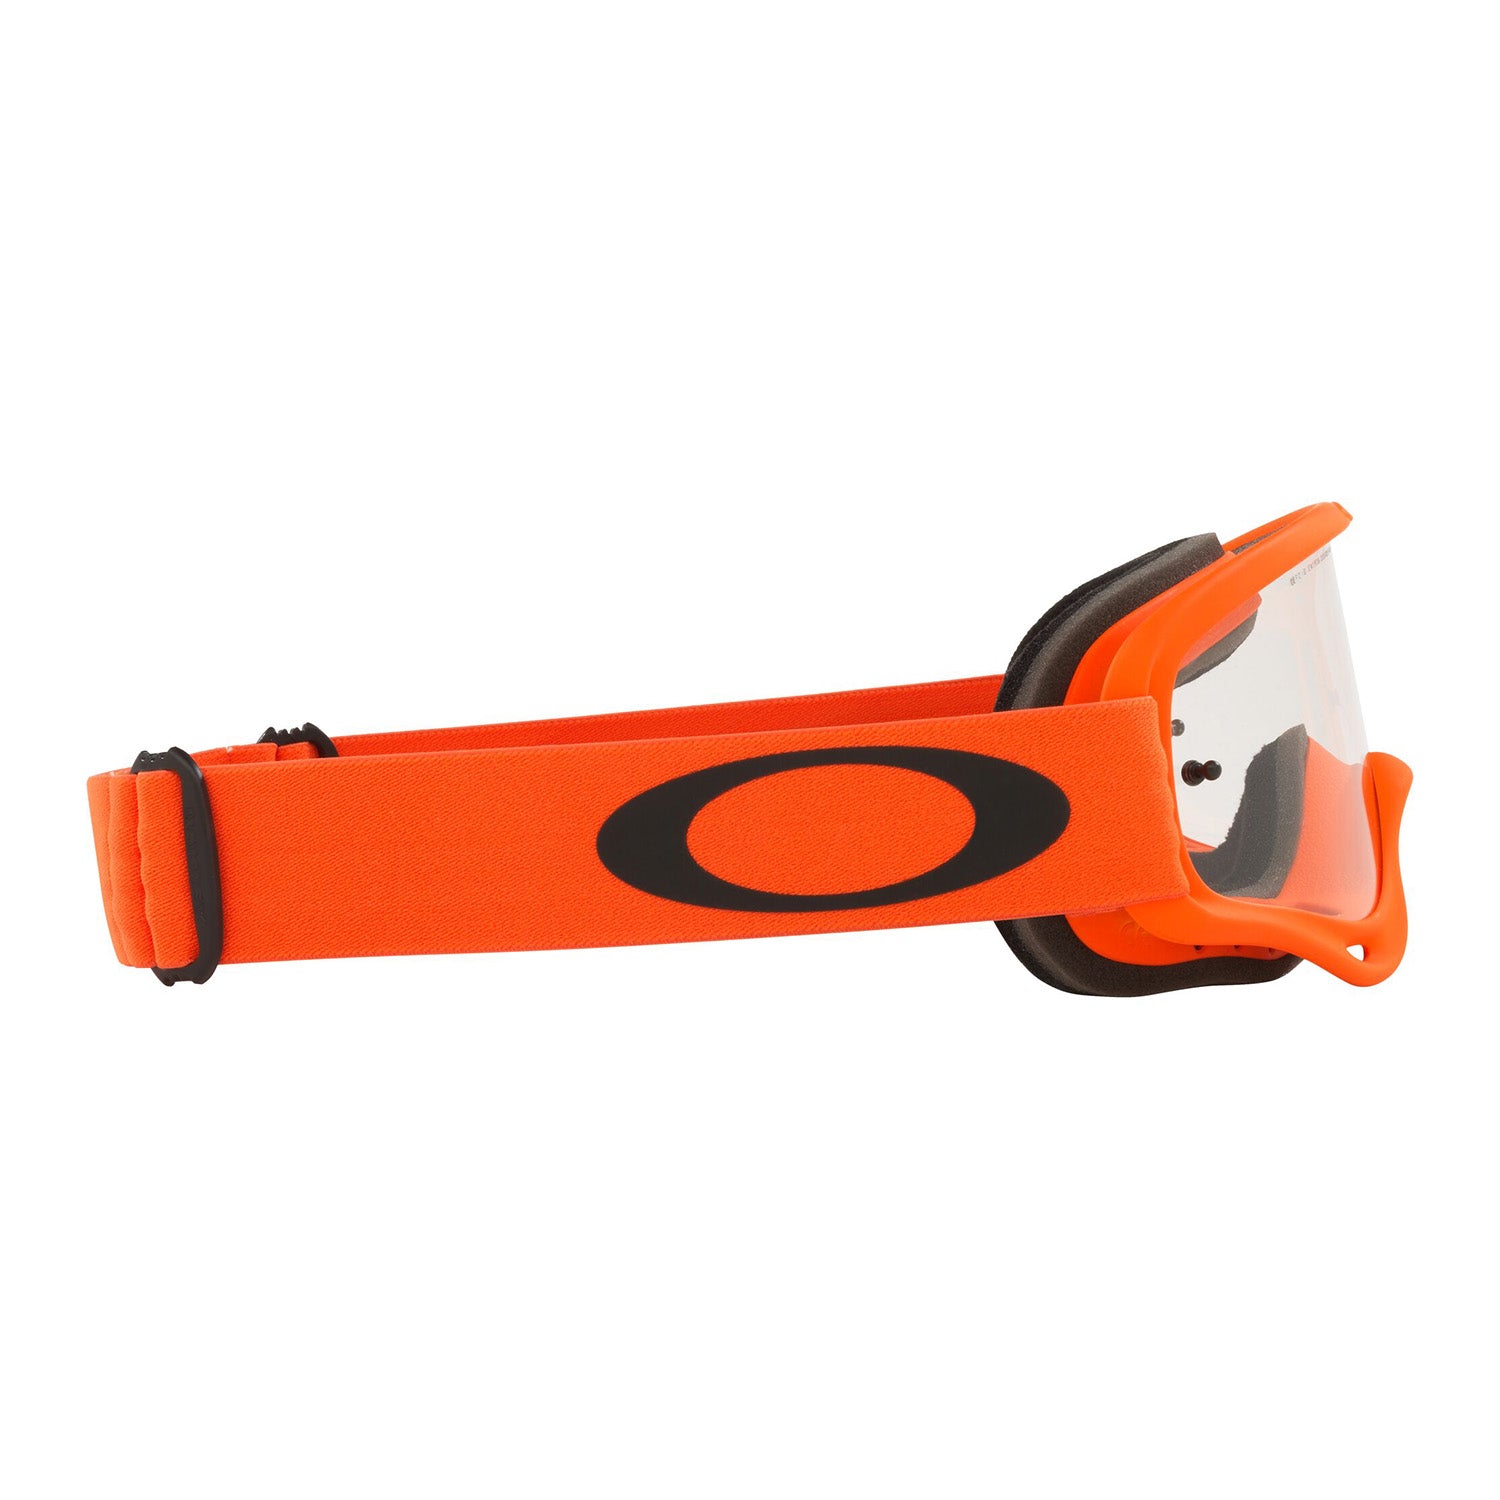 Oakley O Frame MX Goggle Moto Orange - Clear Lens